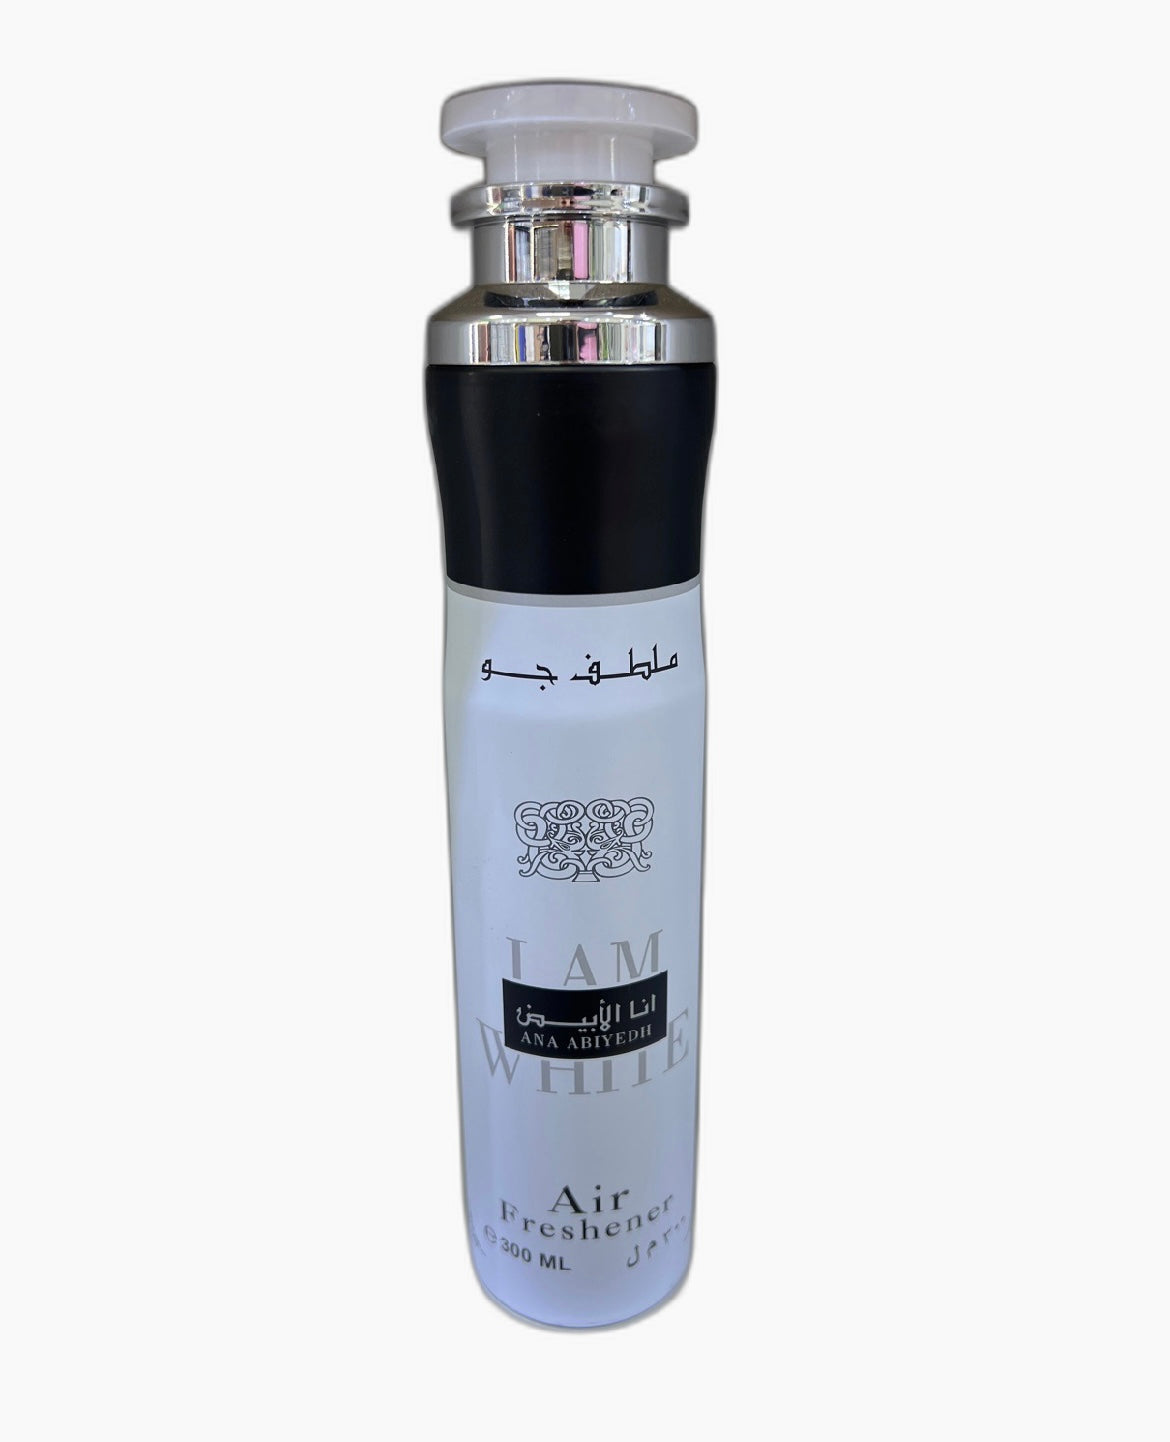 Lattafa Ana Abiyedh Air Freshener 300ml